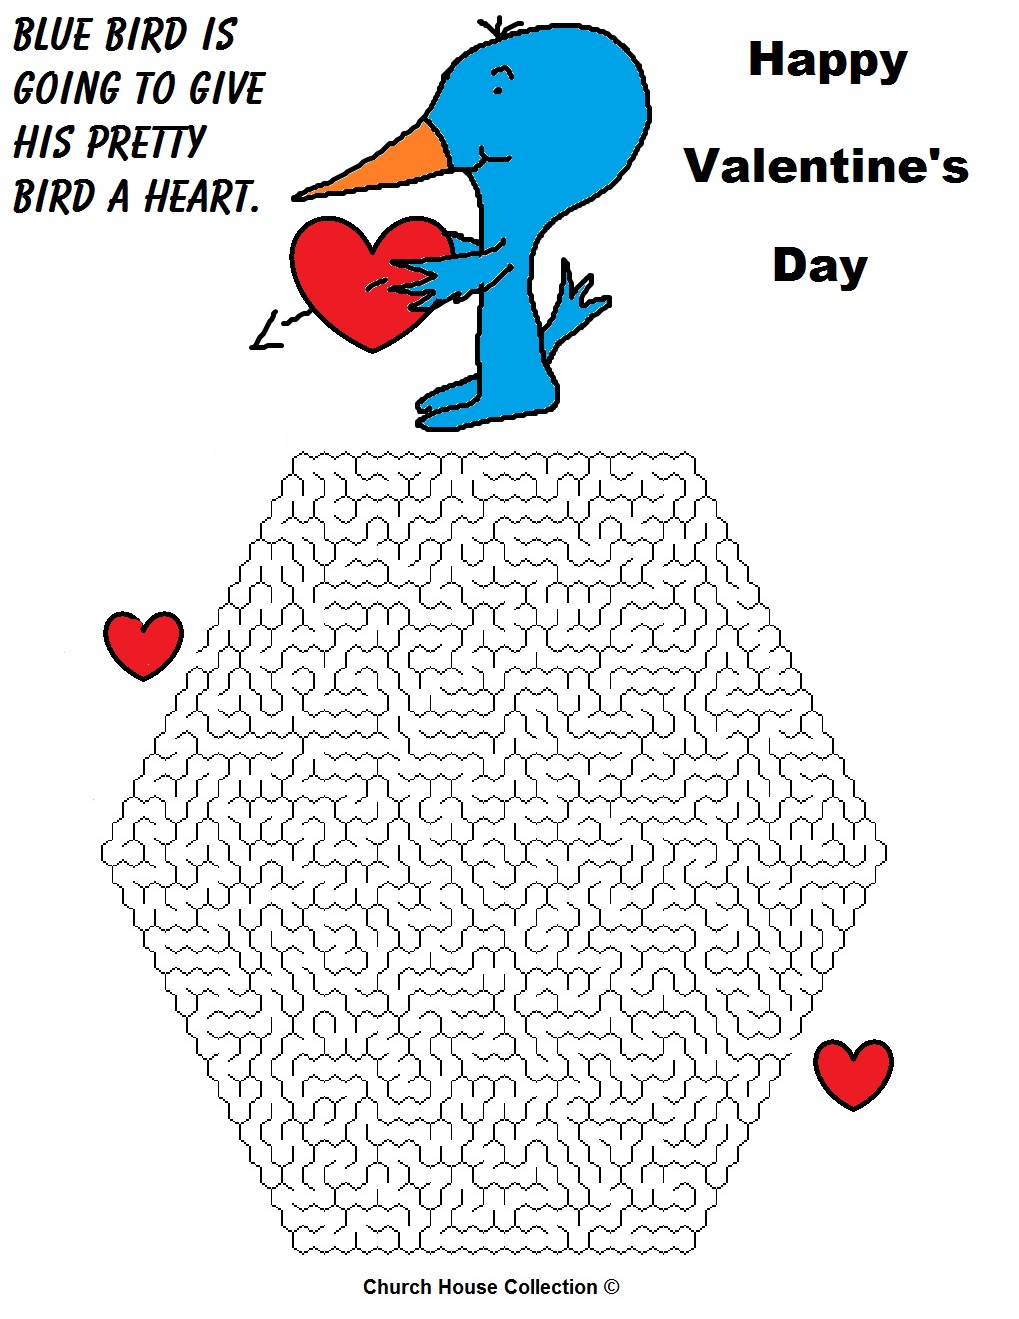 Happy Valentine's Day Maze Blue Bird With Heart